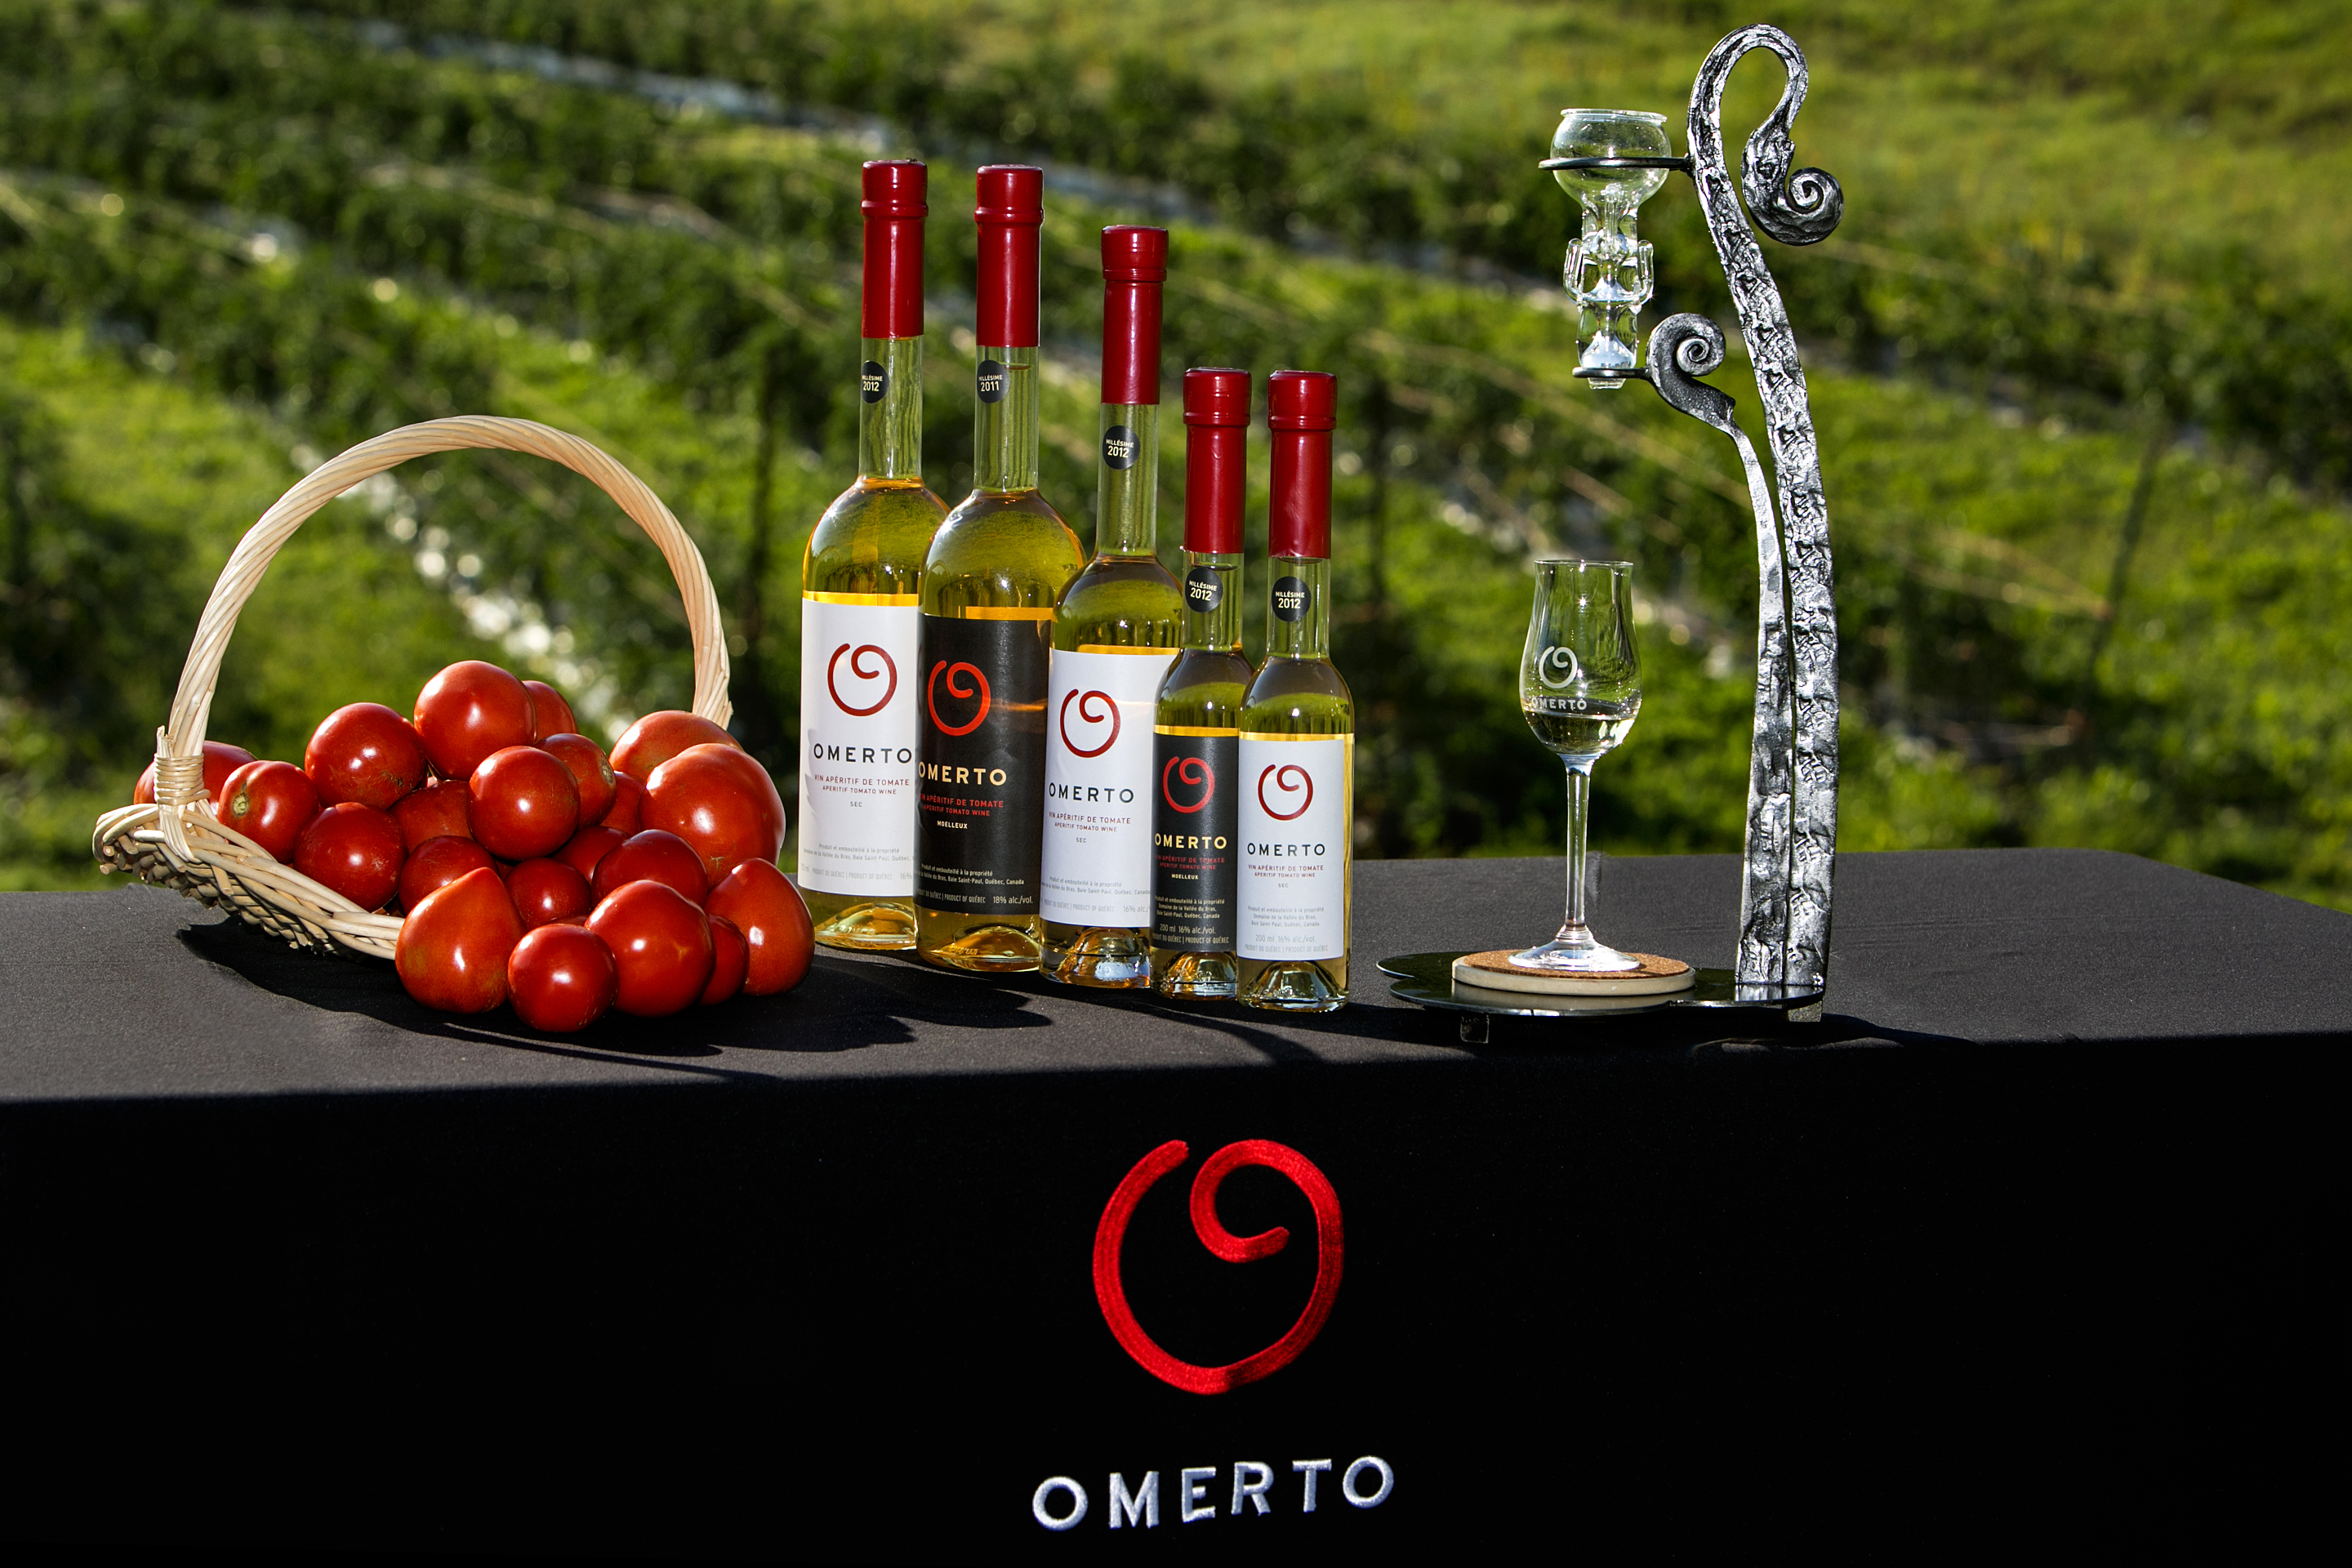 Le vigneron des tomates | Omerto | Charlevoix | À boire | Tour du Québec